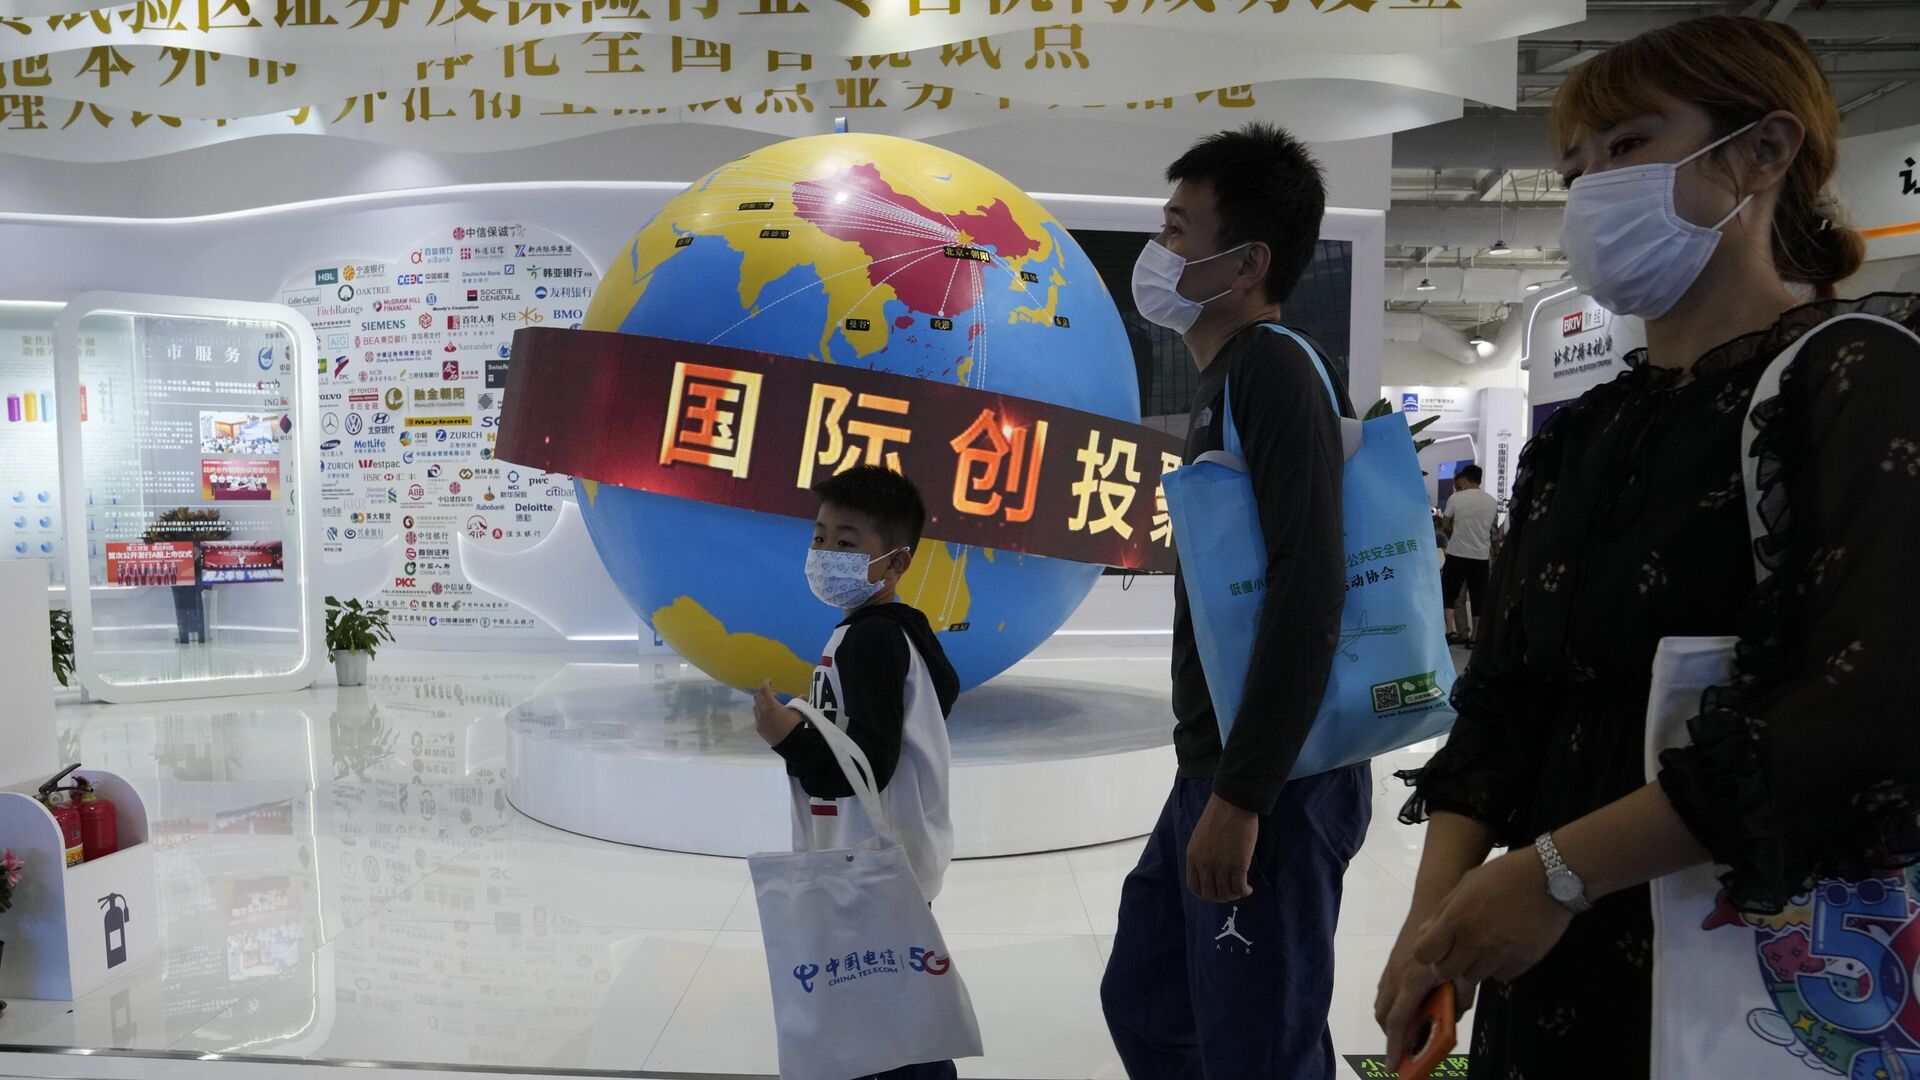 Посетители Китайской международной выставки проходят мимо глобуса с изображением зоны торгового оборота Китая  - Sputnik Азербайджан, 1920, 01.04.2022